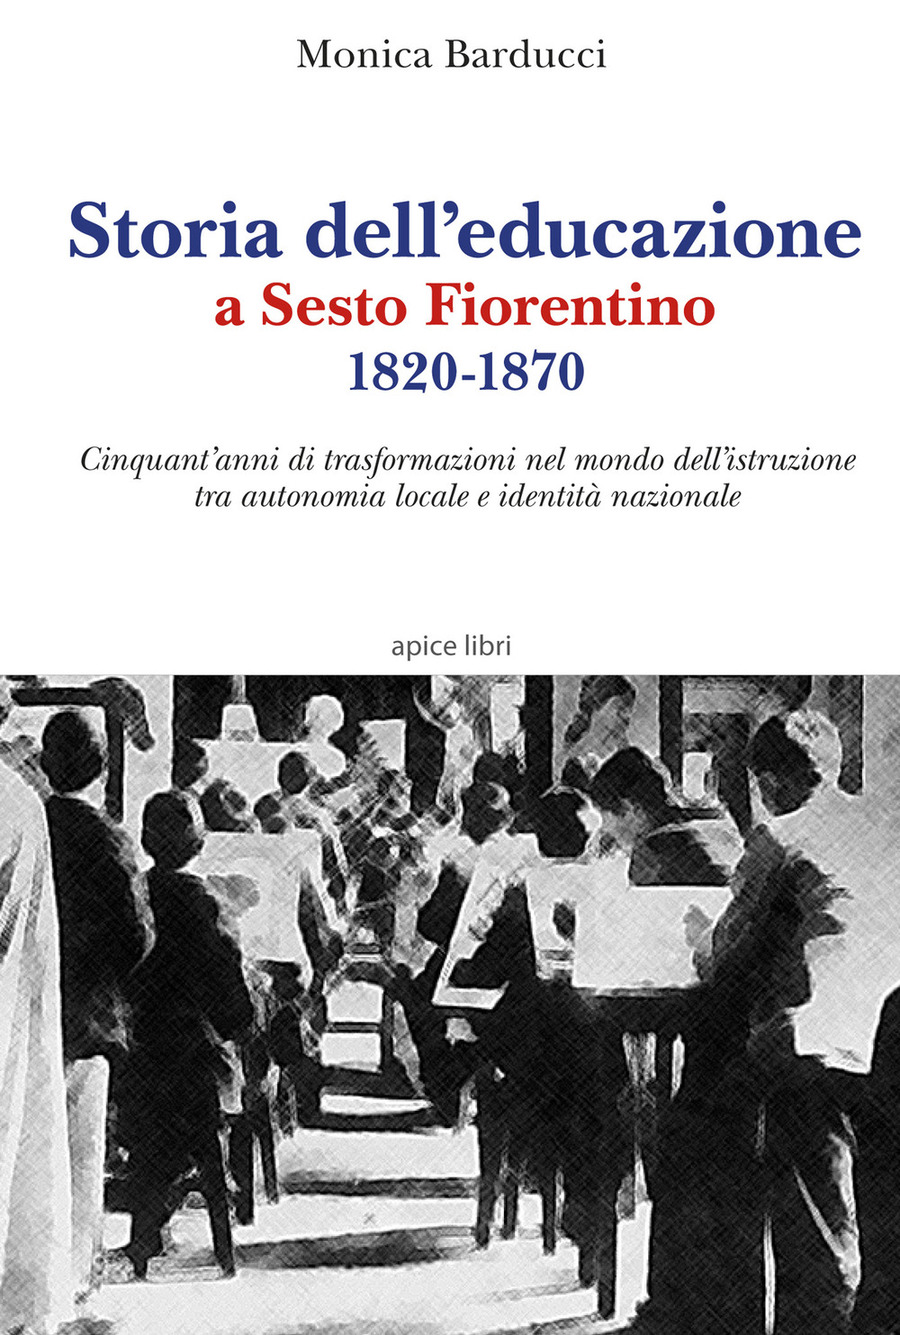 Storia dell’educazione a Sesto Fiorentino 1820-1870. Cinquant’anni di trasformazioni nel mondo dell’istruzione tra autonomia locale e identità nazionale